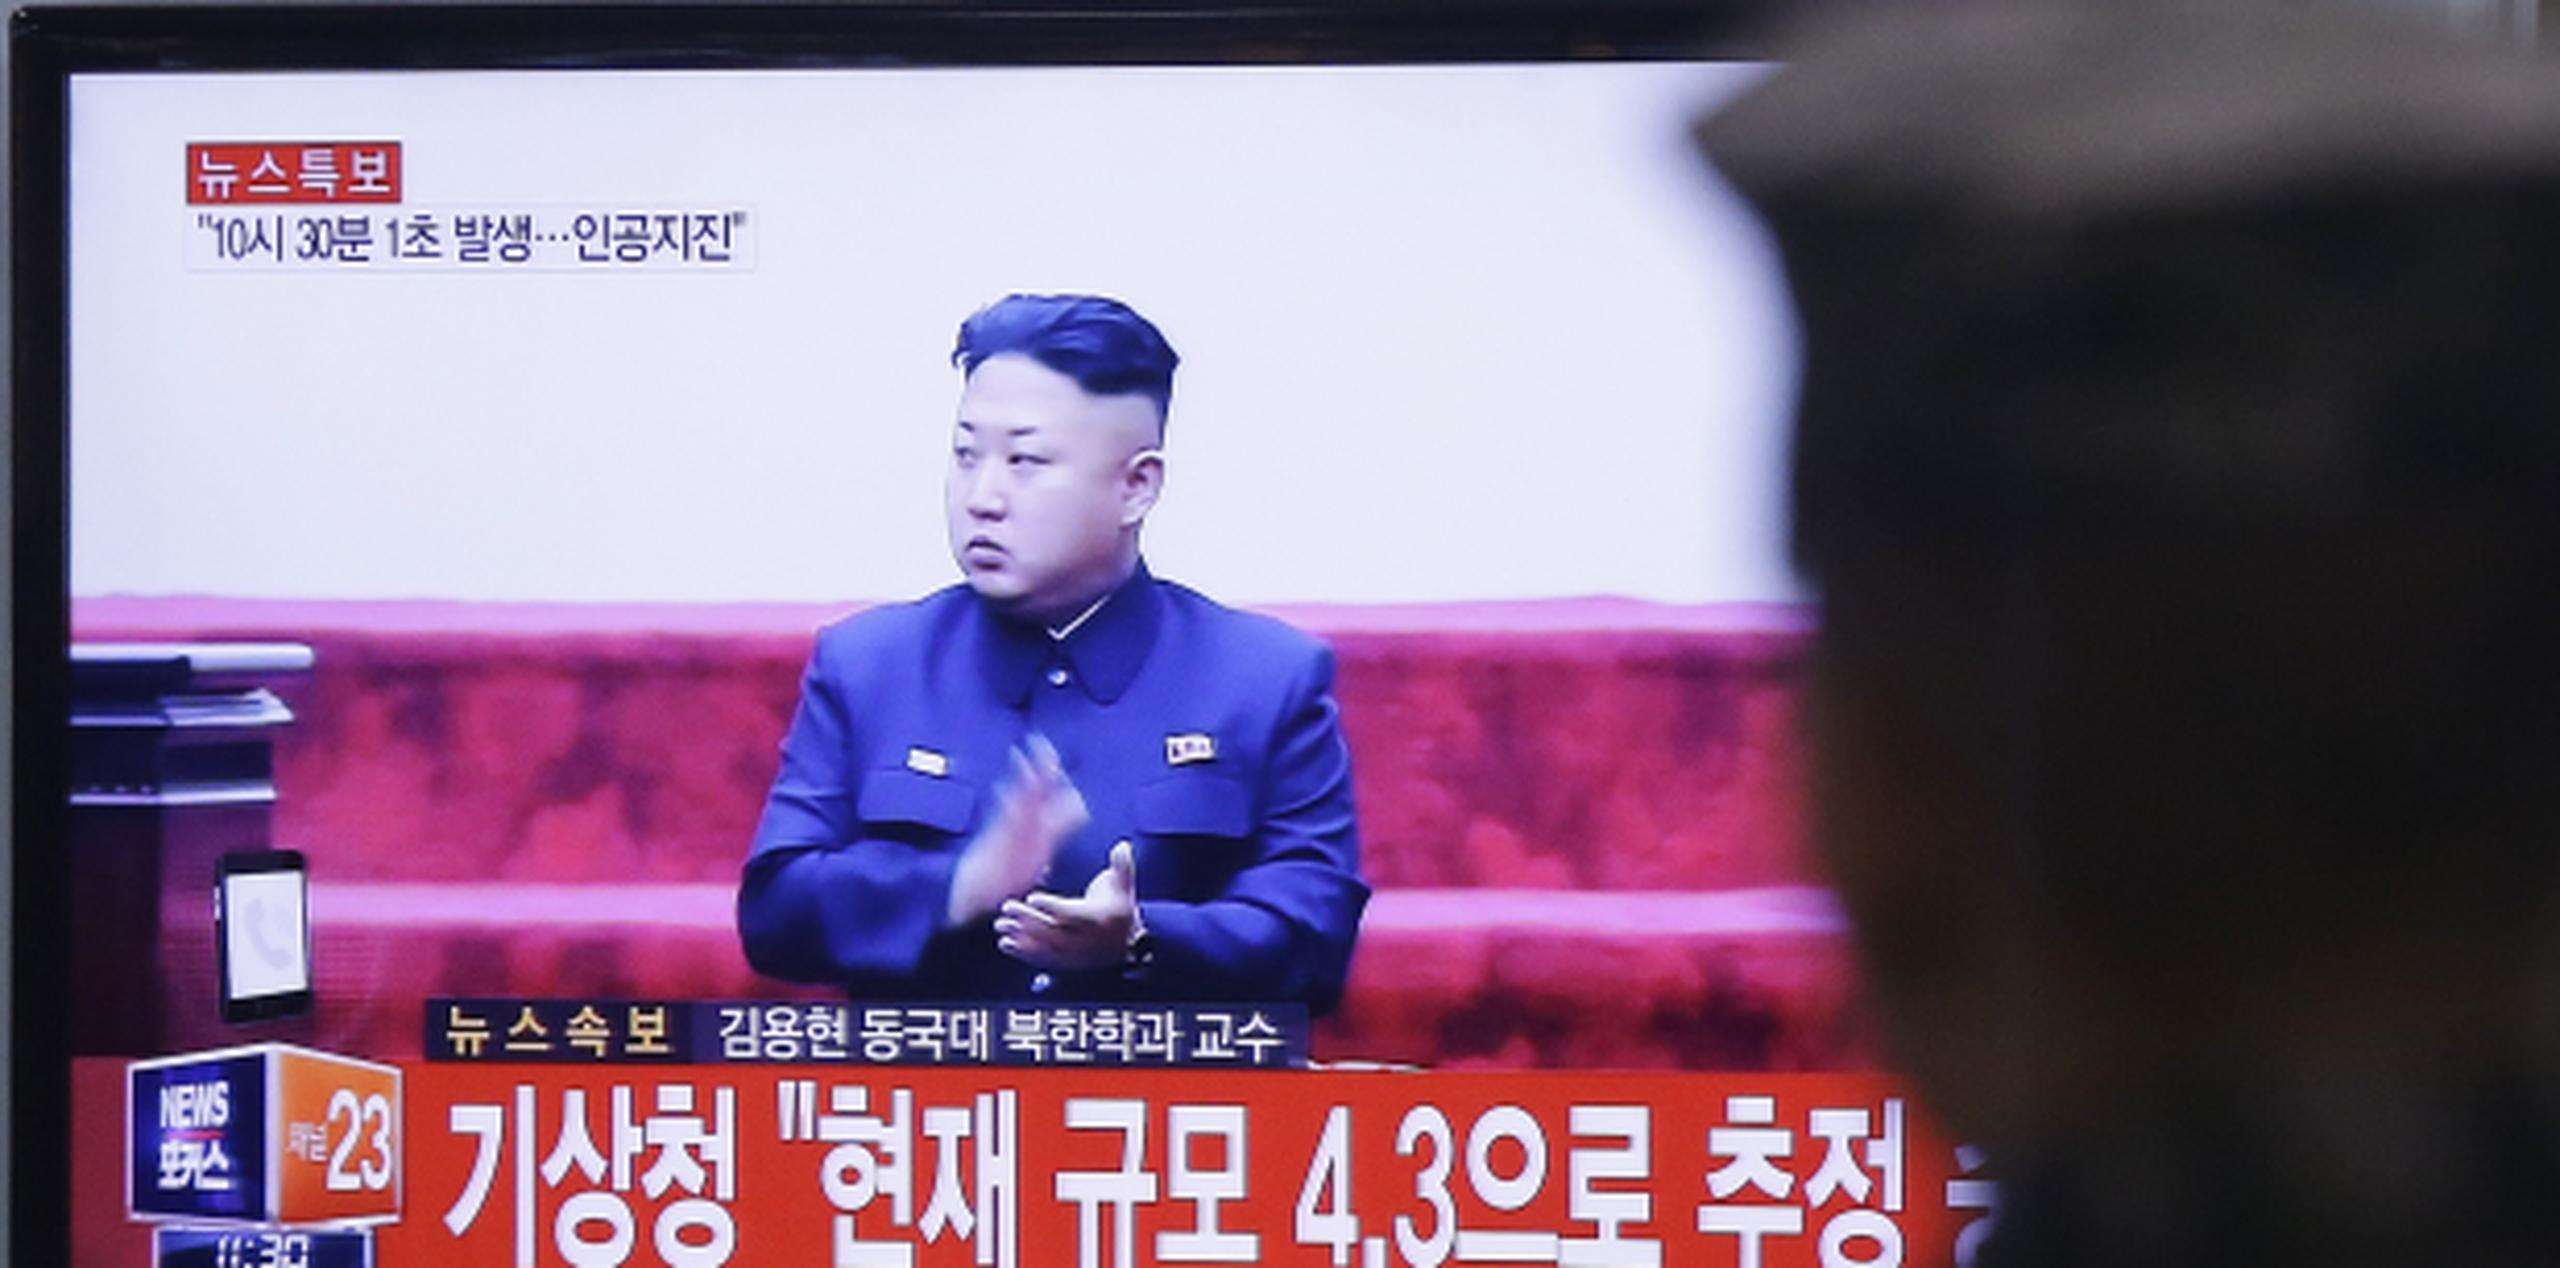 Un soldado surcoreano ve una imagen en televisión del lider norcoreano Kim Jong Un. (AP / Ahn Young-joon)